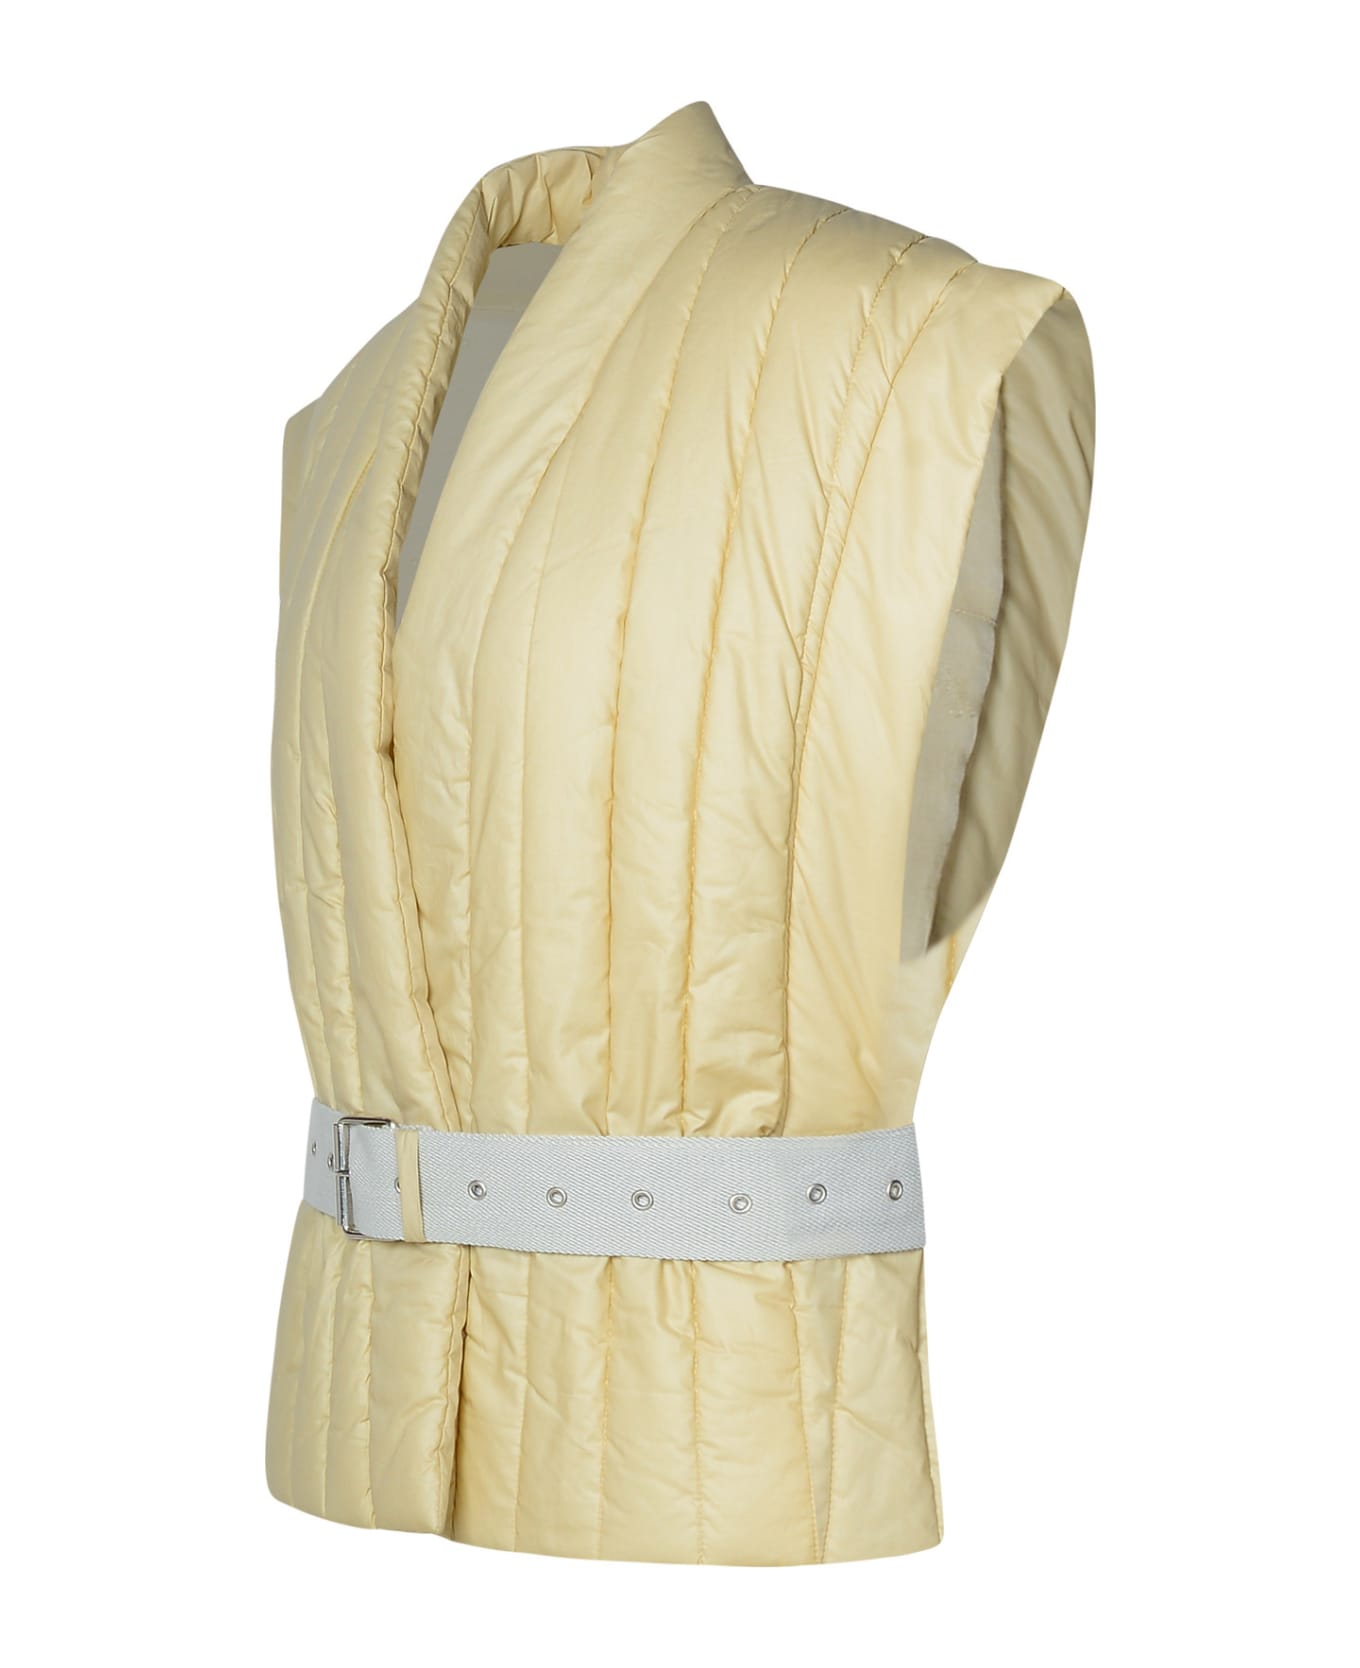 Isabel Marant 'ajali' Ecru Cotton Blend Jacket - Beige